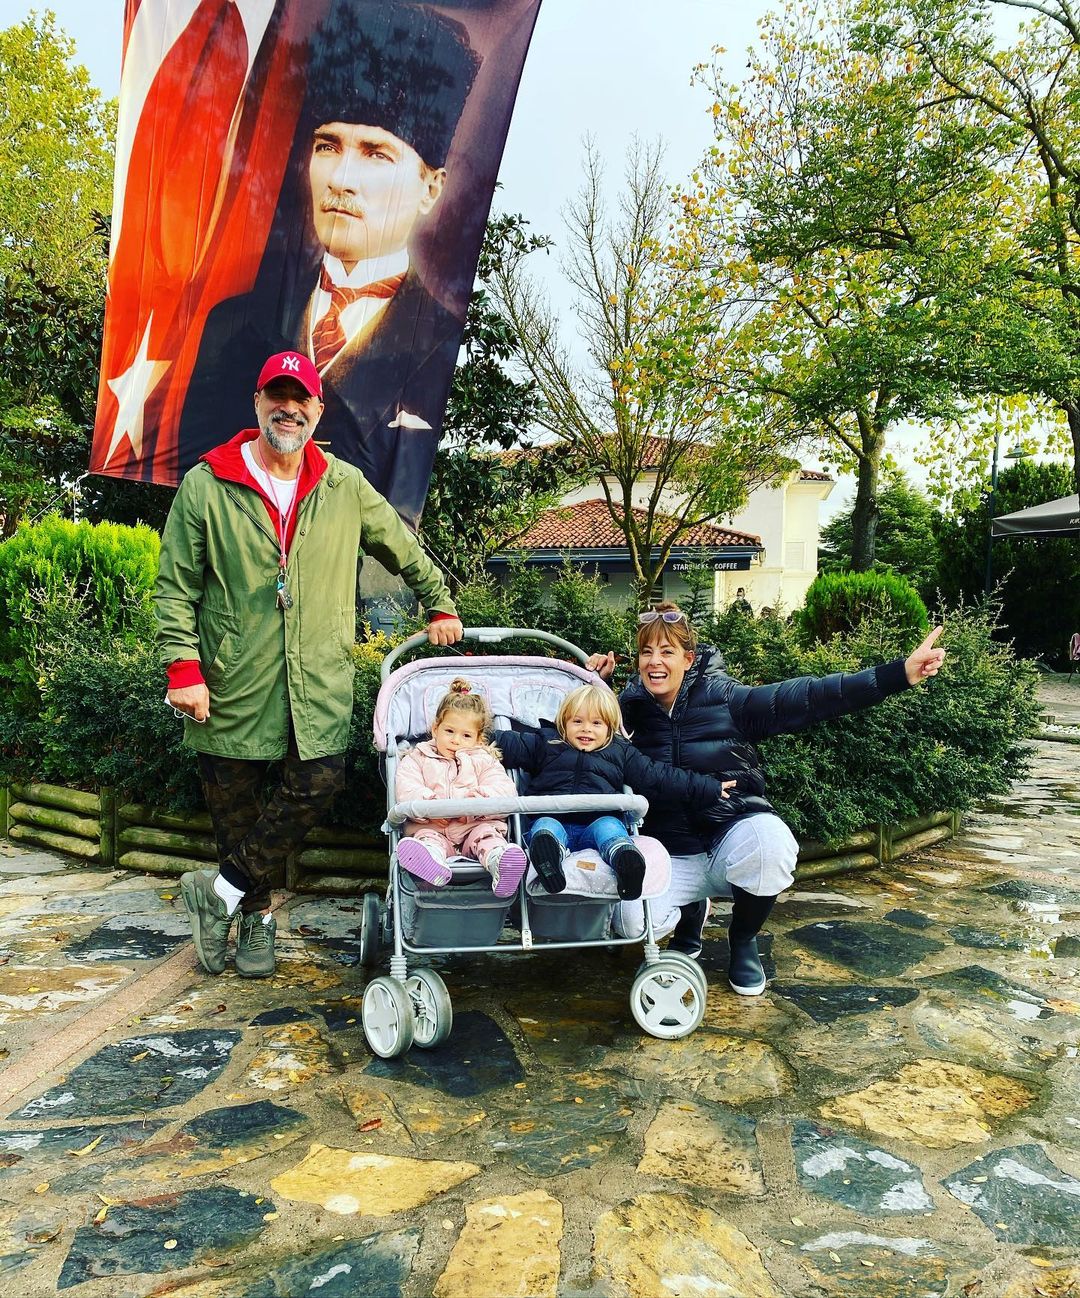 Doğa Rutkay'ın ikizleriyle, Pınar Altuğ'un kızıyla dikkat çeken 29 Ekim kutlaması 9